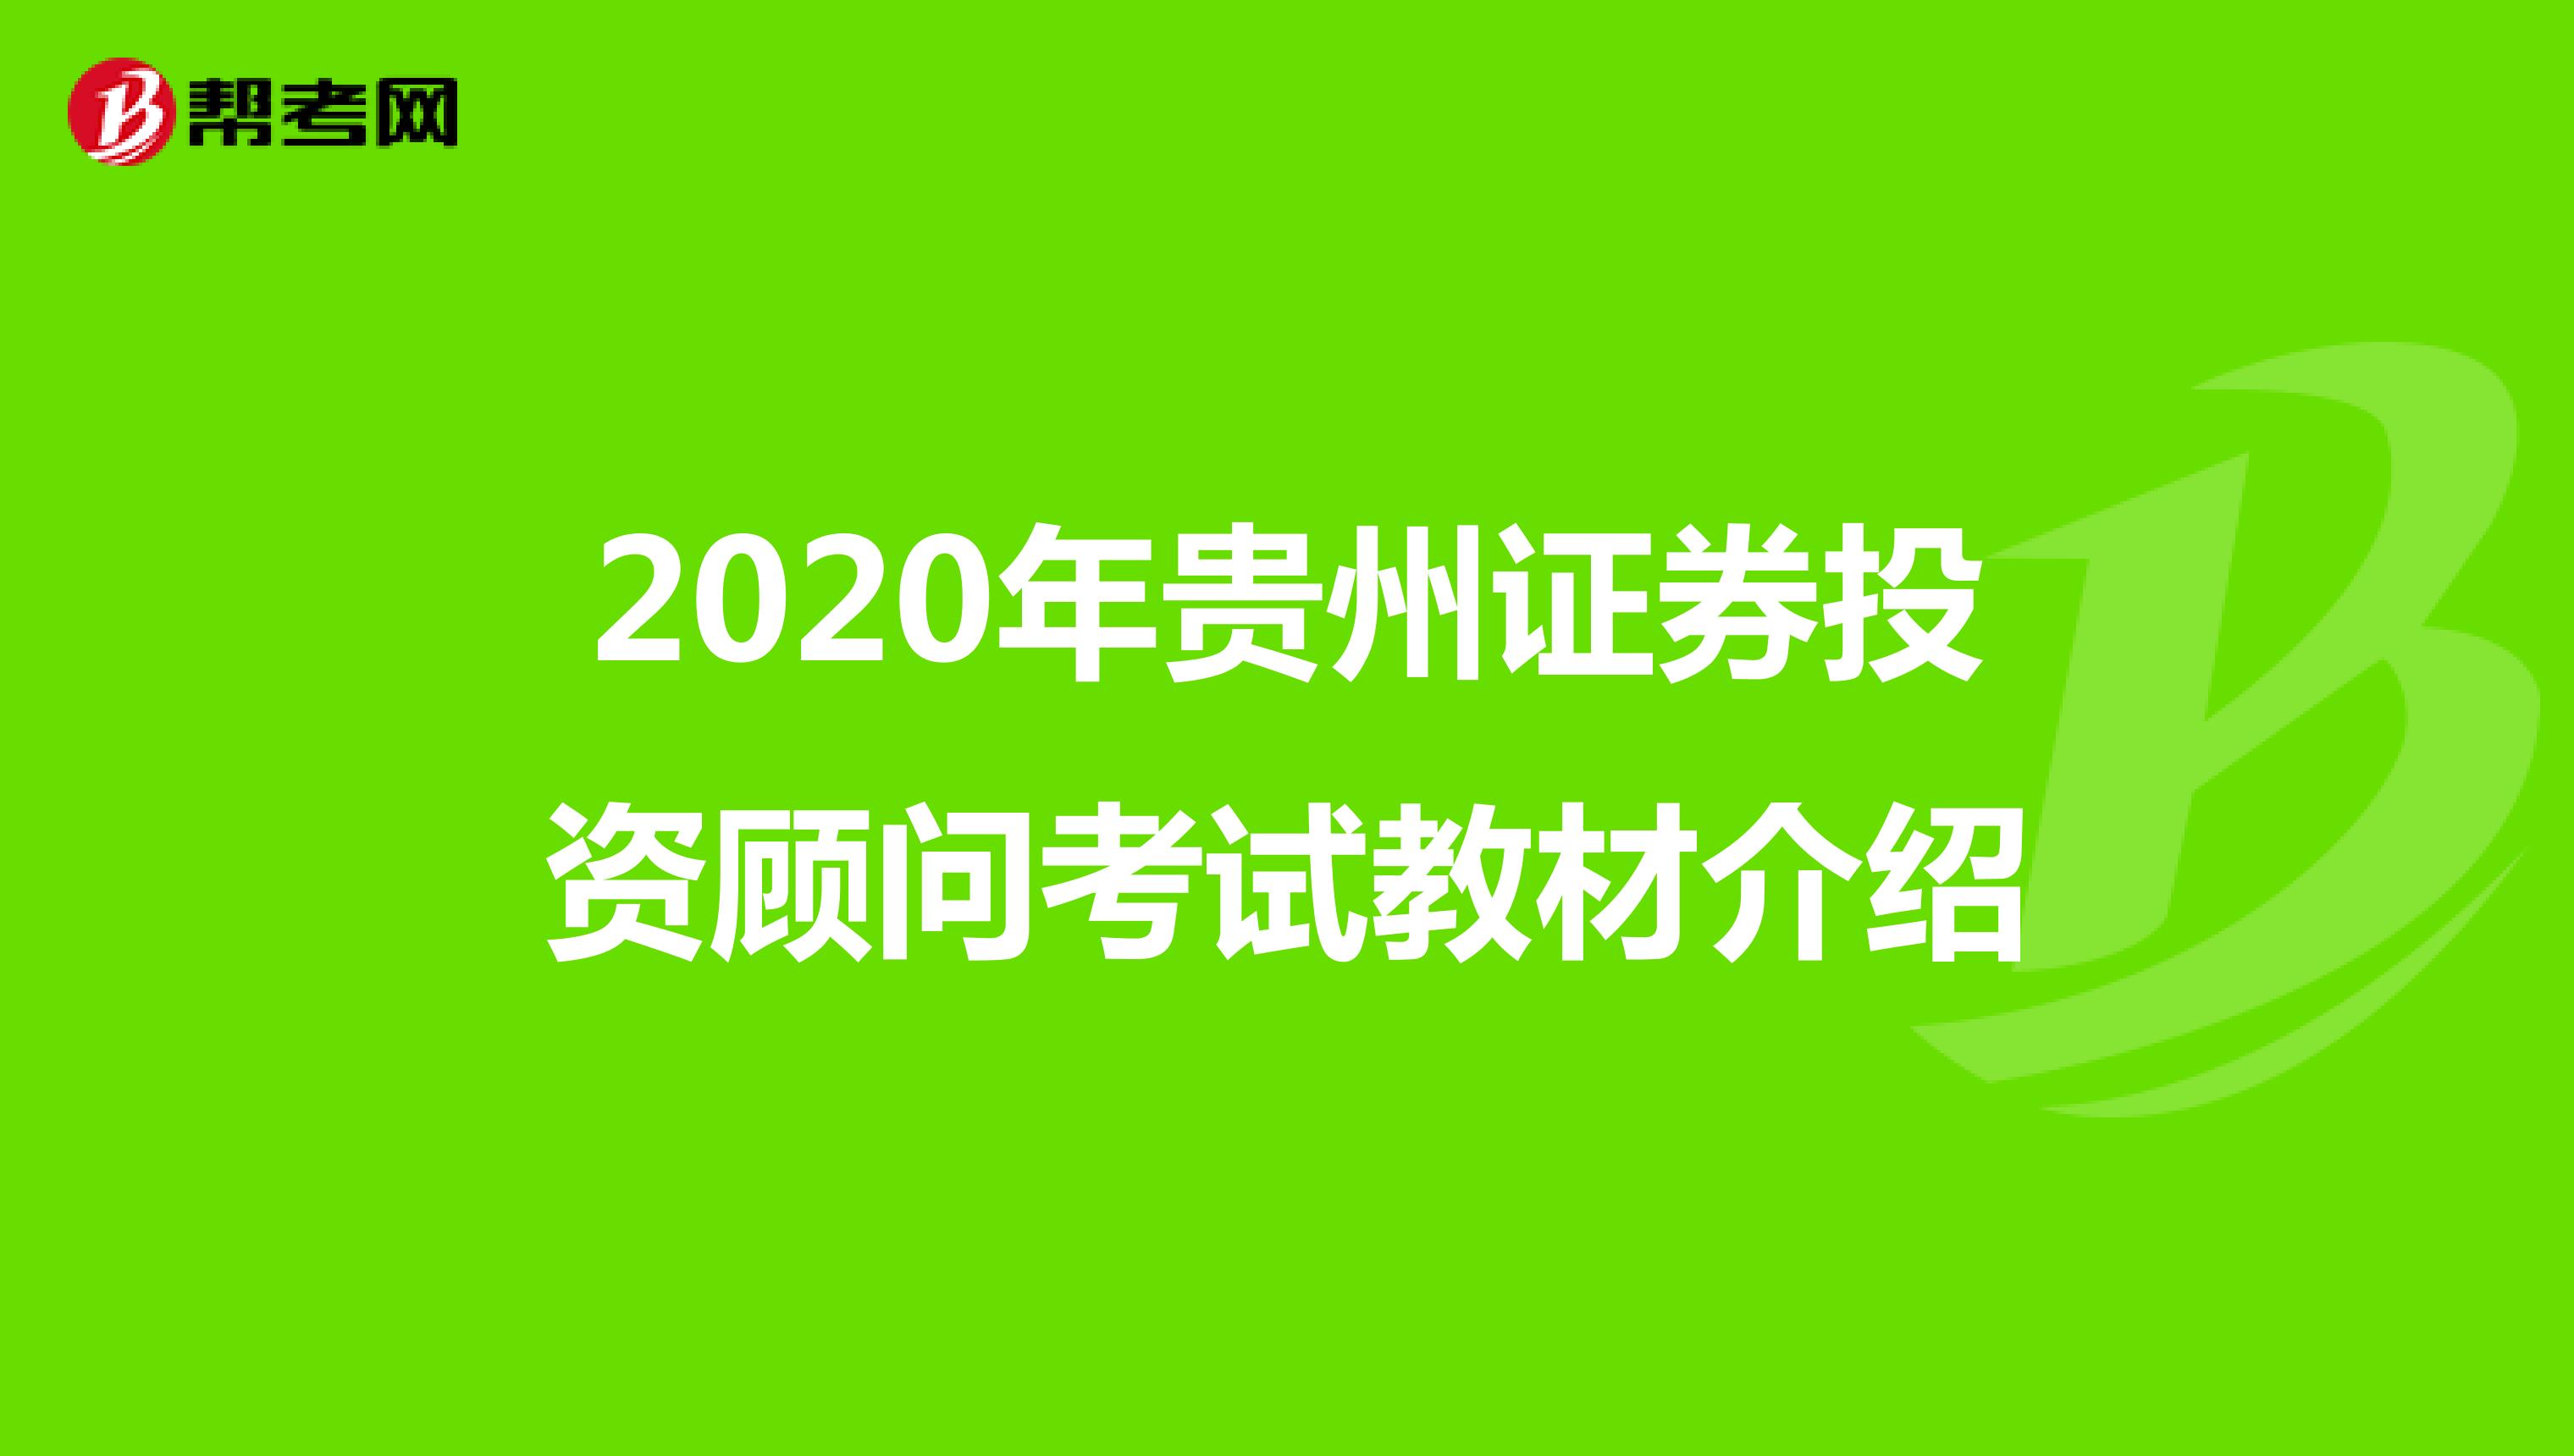 2020年贵州证券投资顾问考试教材介绍